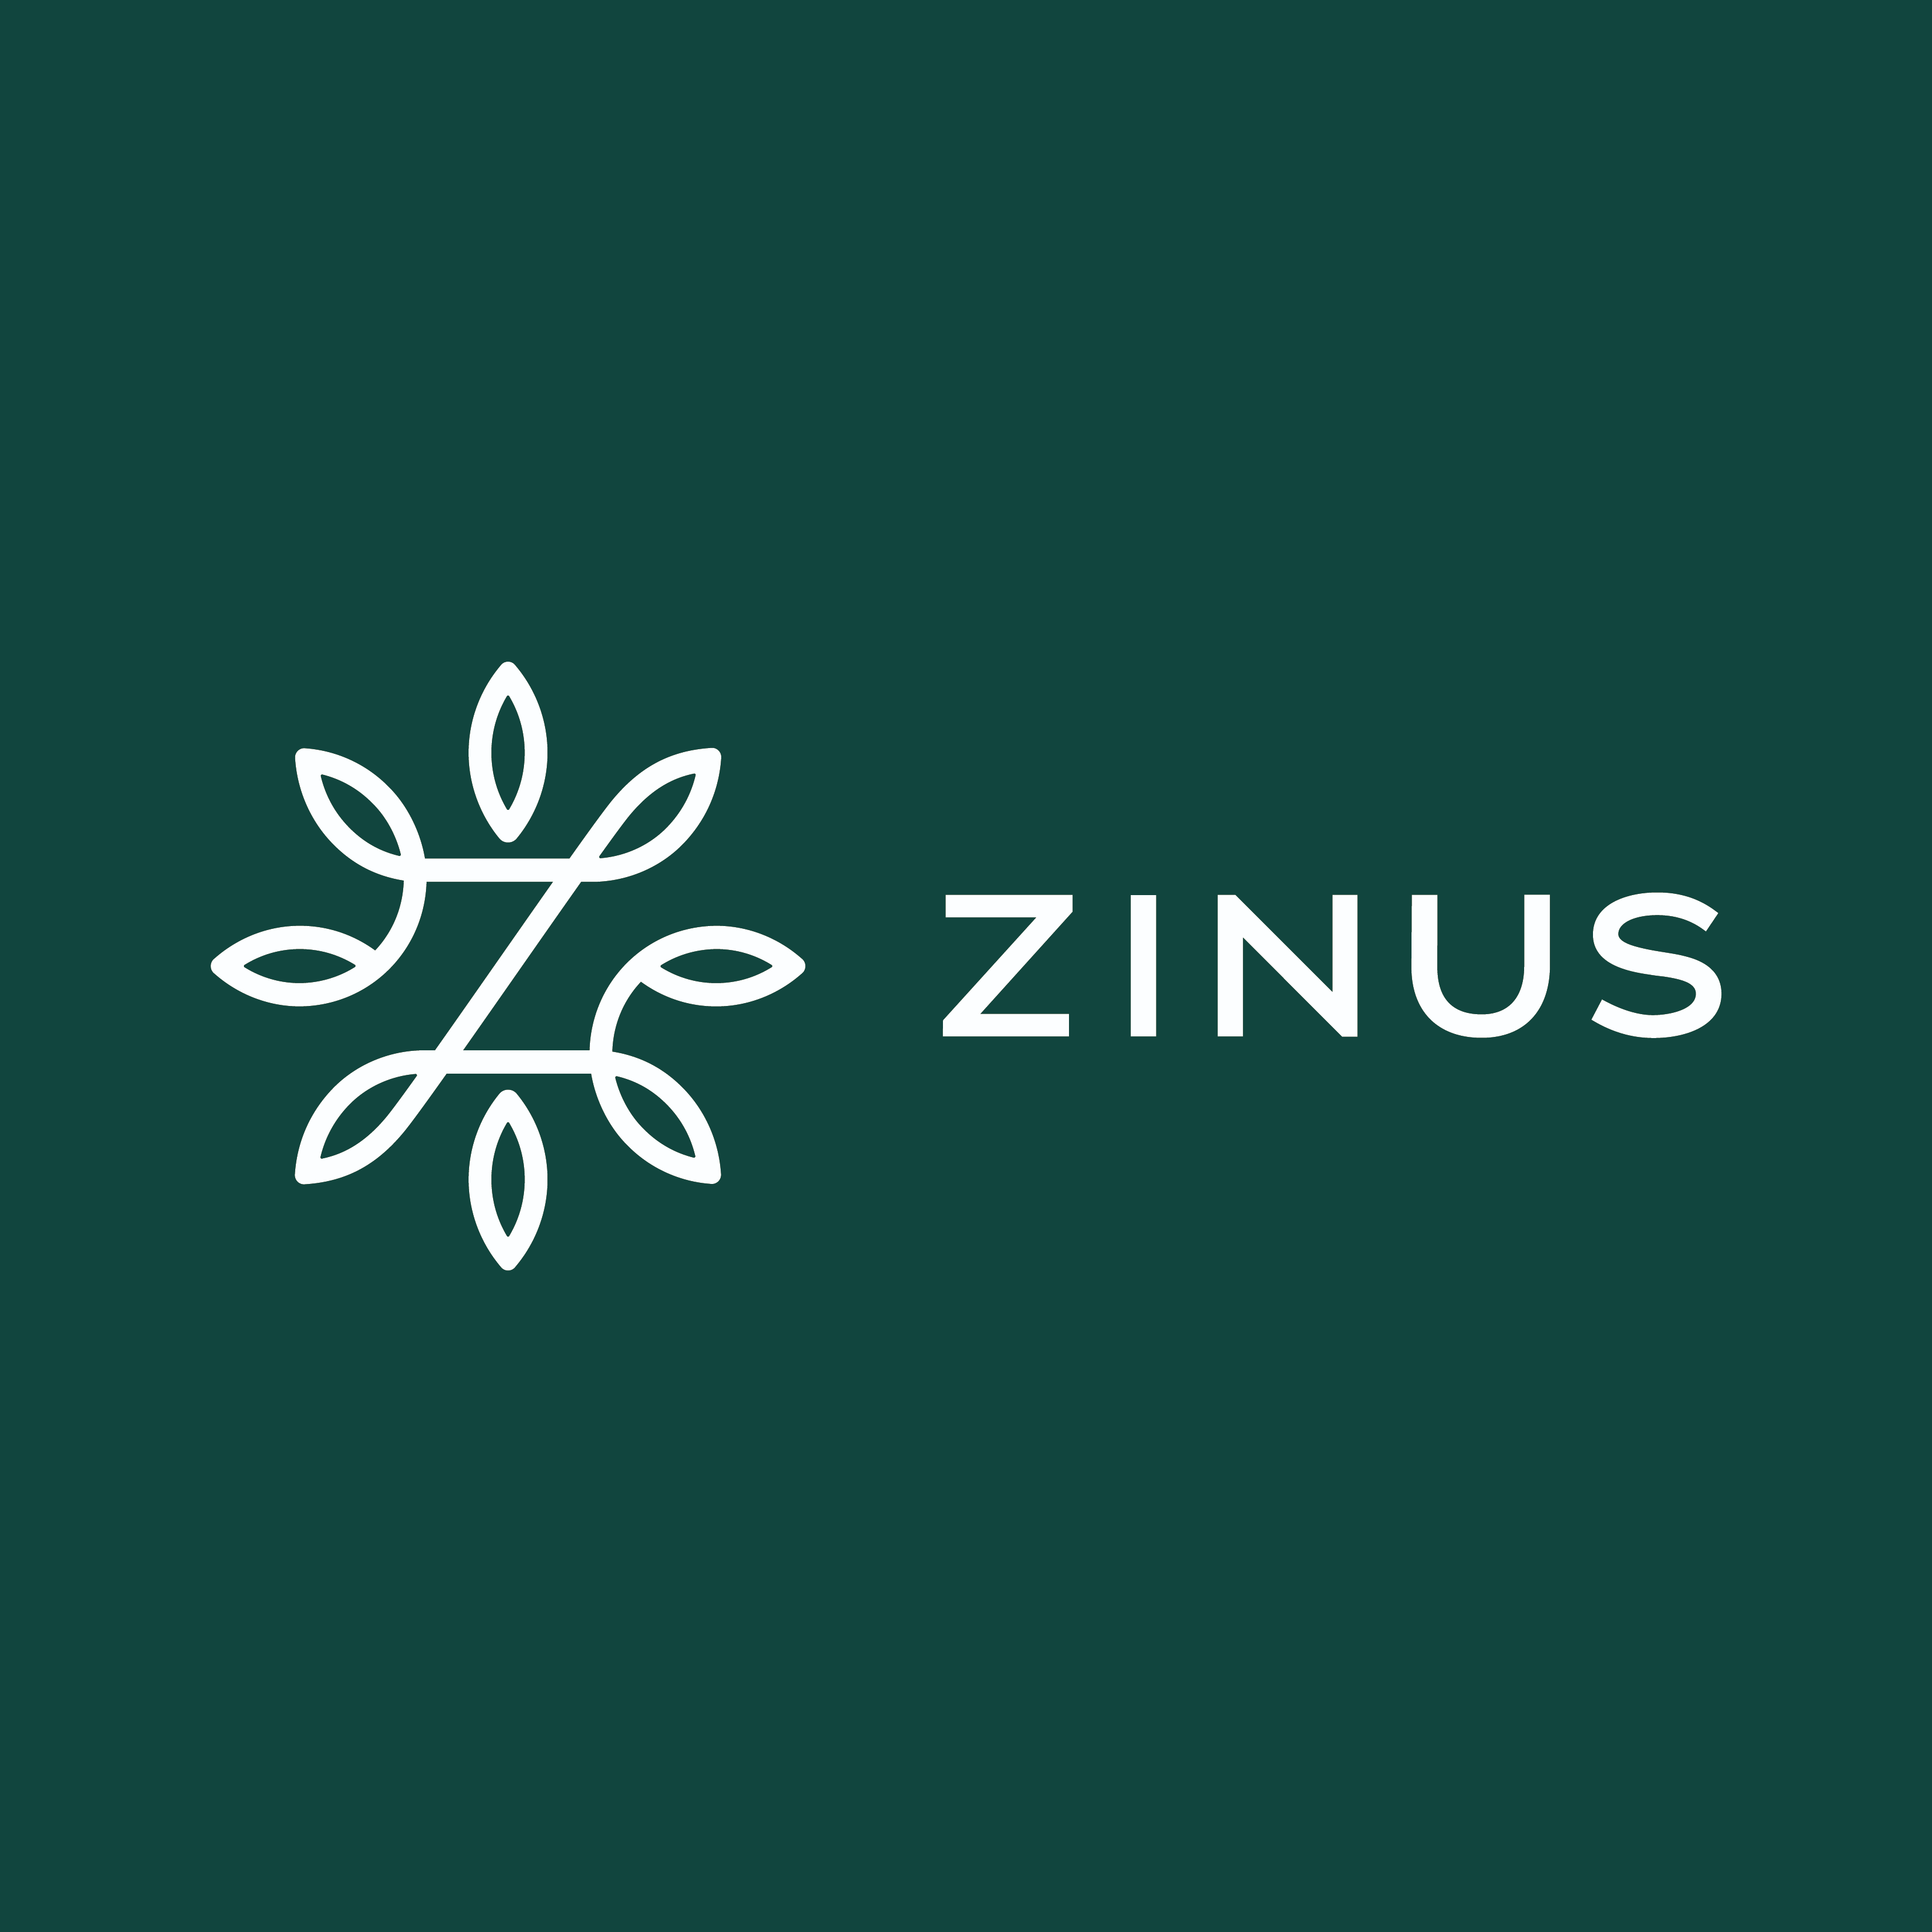 スポンサー ZINUS JAPAN株式会社様